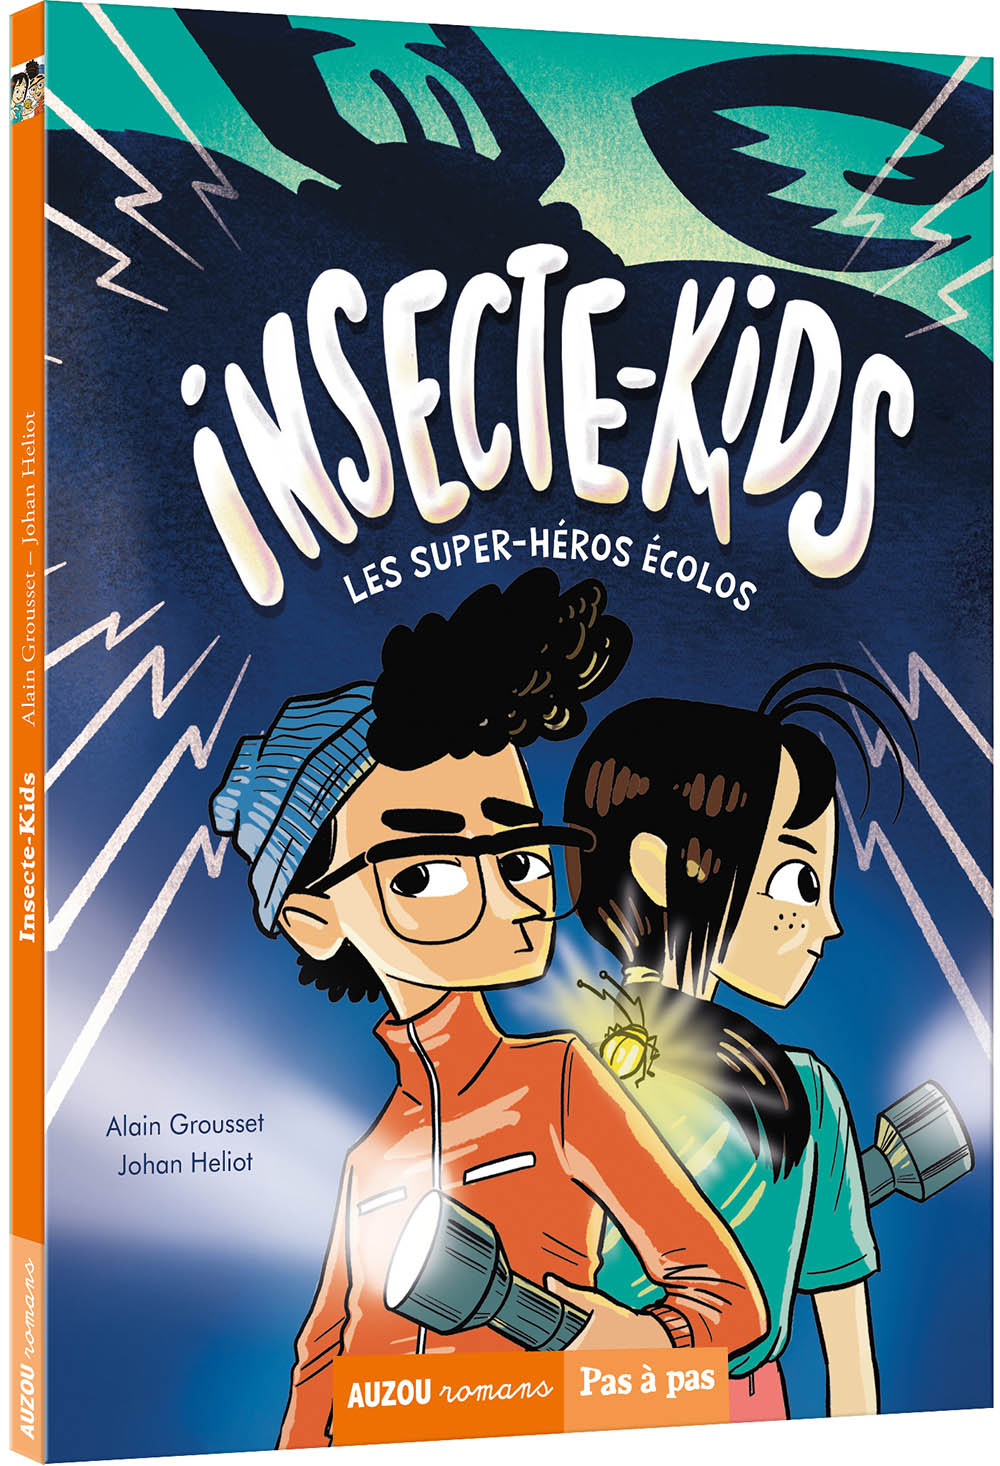 Insecte-kids : les super-heros ecolos t1